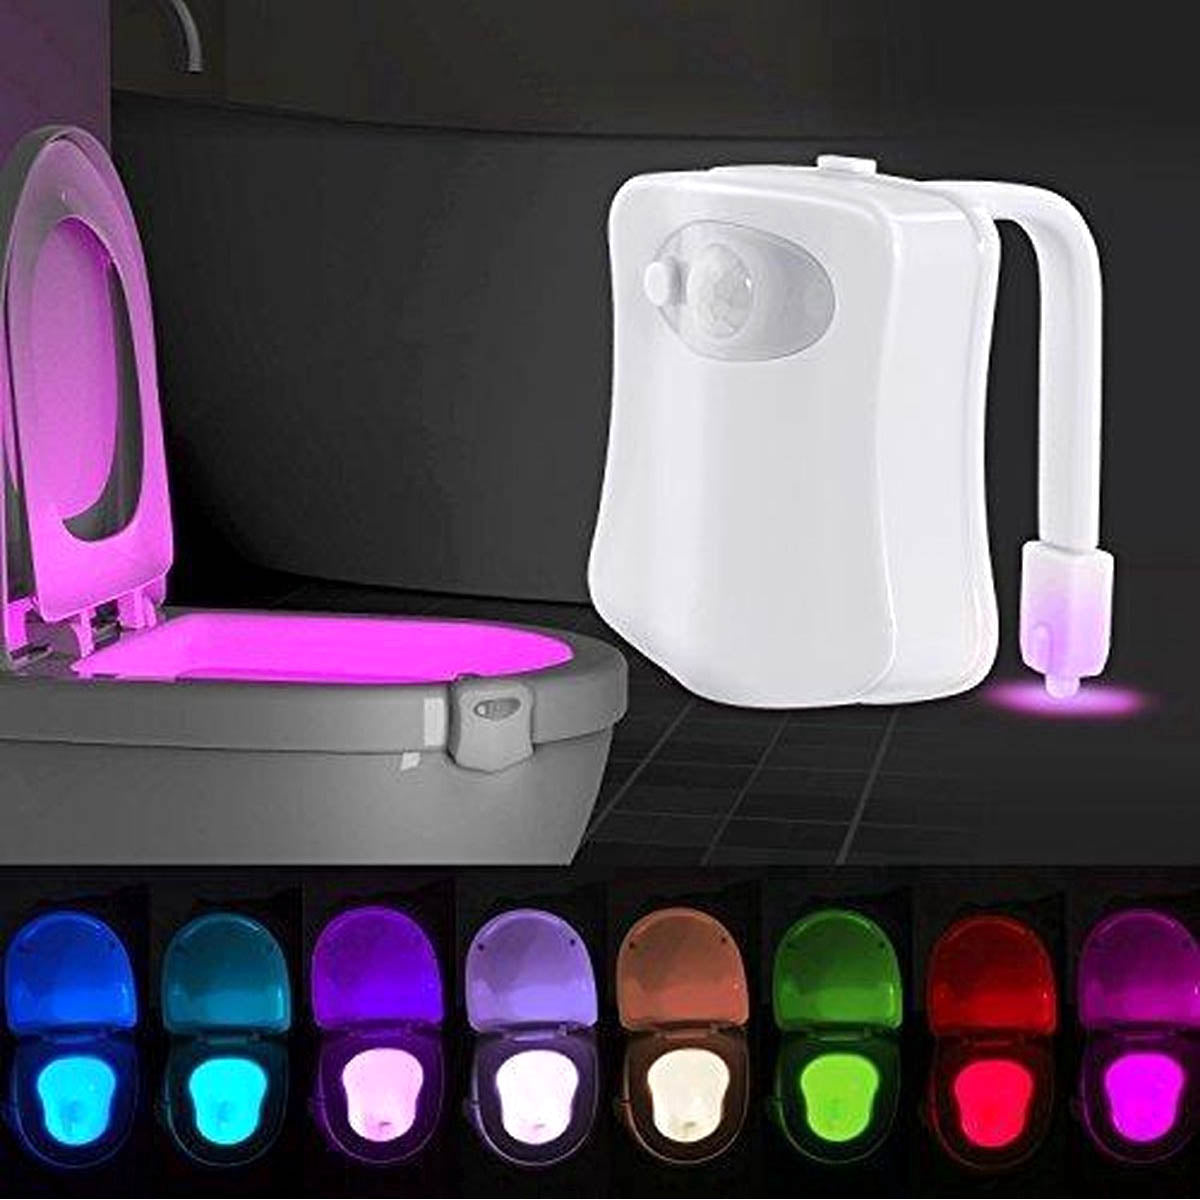 Ariko Toiletten-LED-Beleuchtung - 8 Farben - Bewegungssensor - Batterieschonung - Verschiedene Lichtfarben - Inkl. Batterien